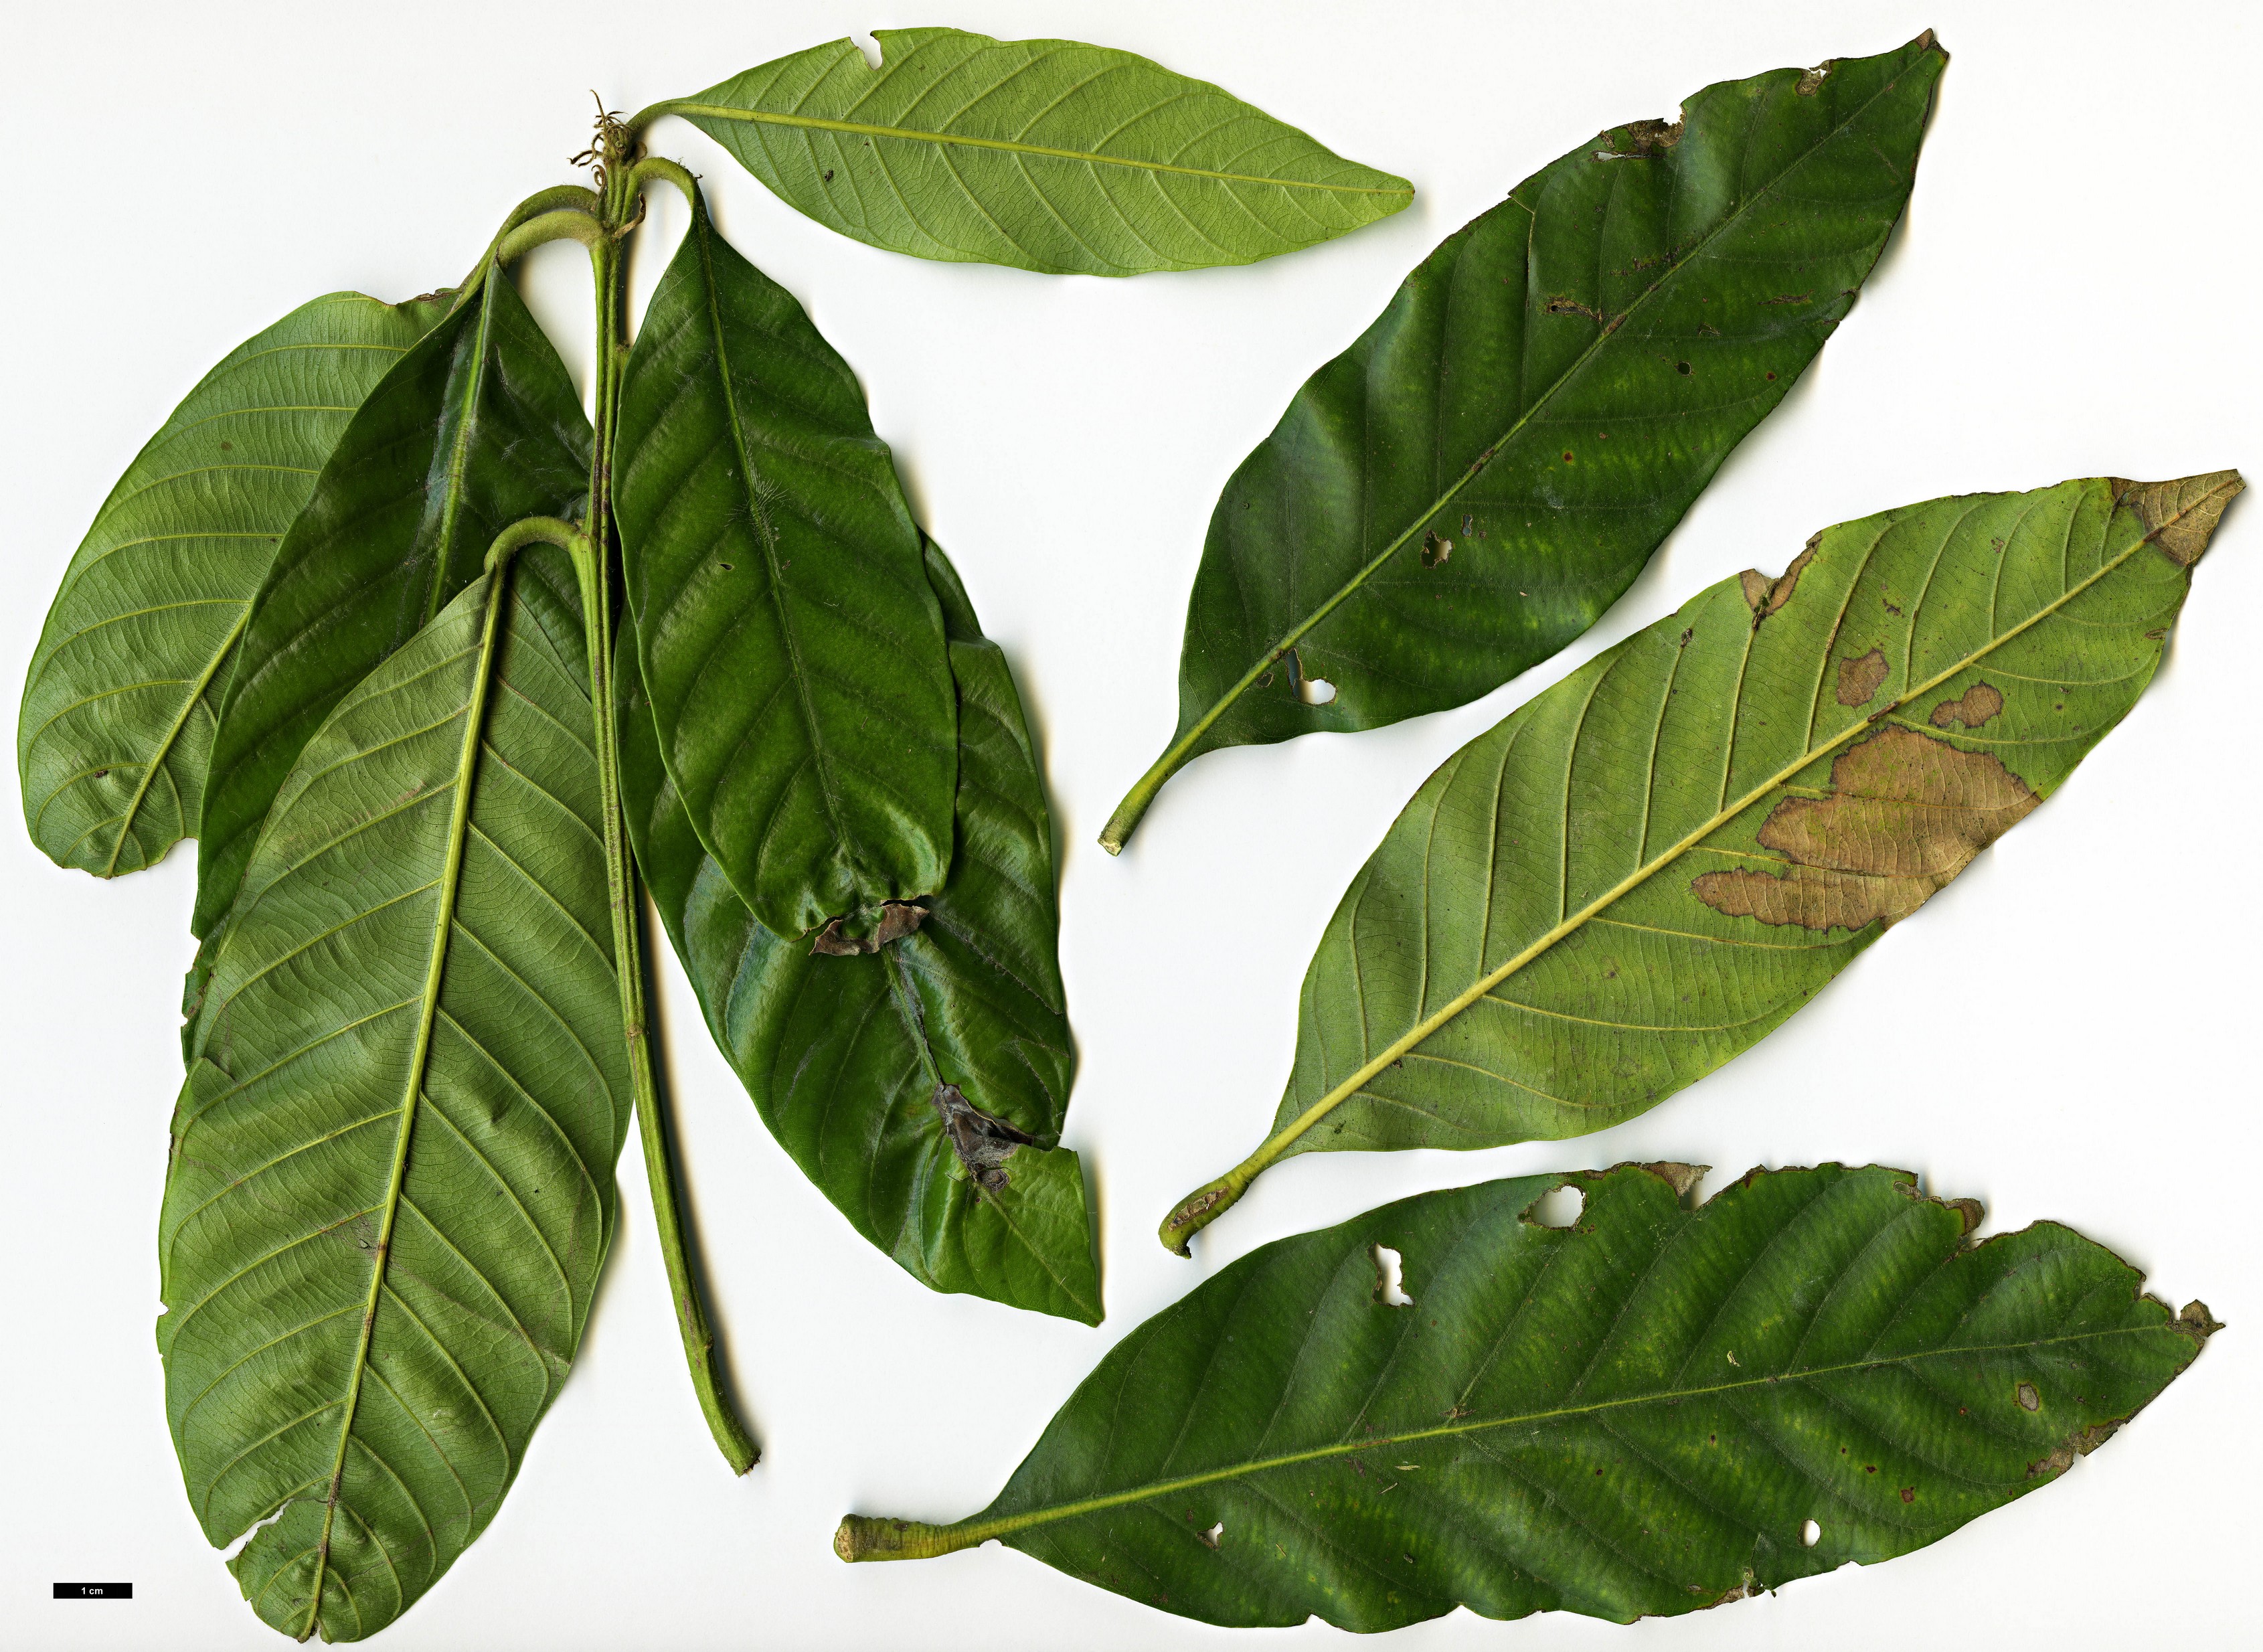 High resolution image: Family: Fagaceae - Genus: Lithocarpus - Taxon: truncatus